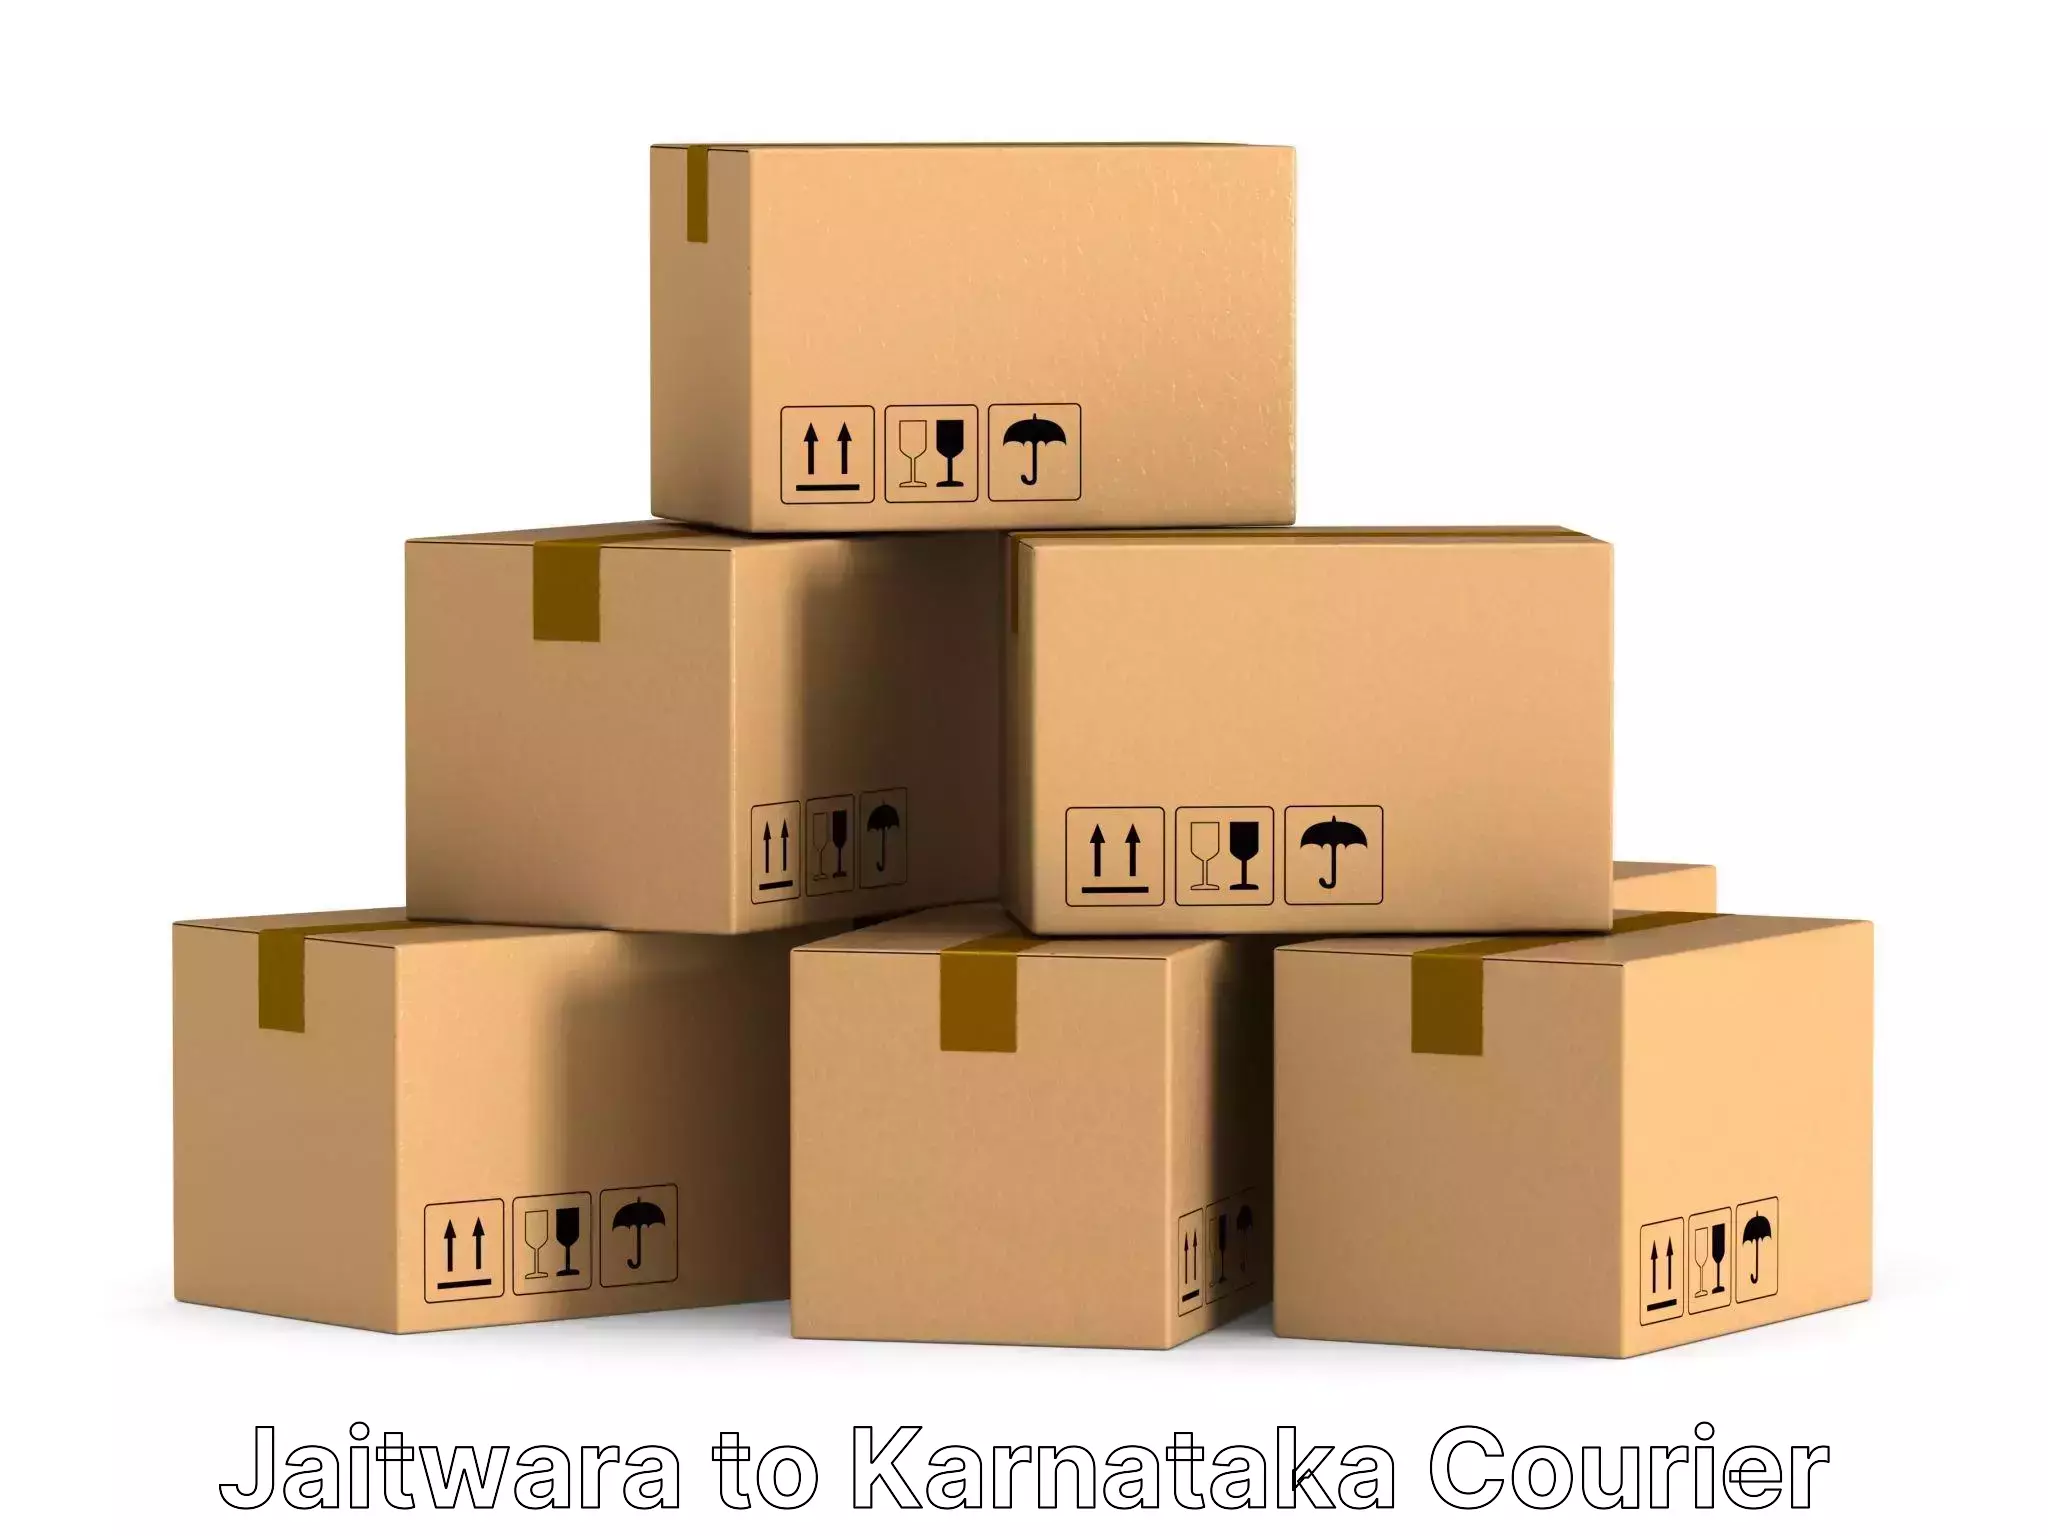 Furniture relocation experts Jaitwara to Karnataka